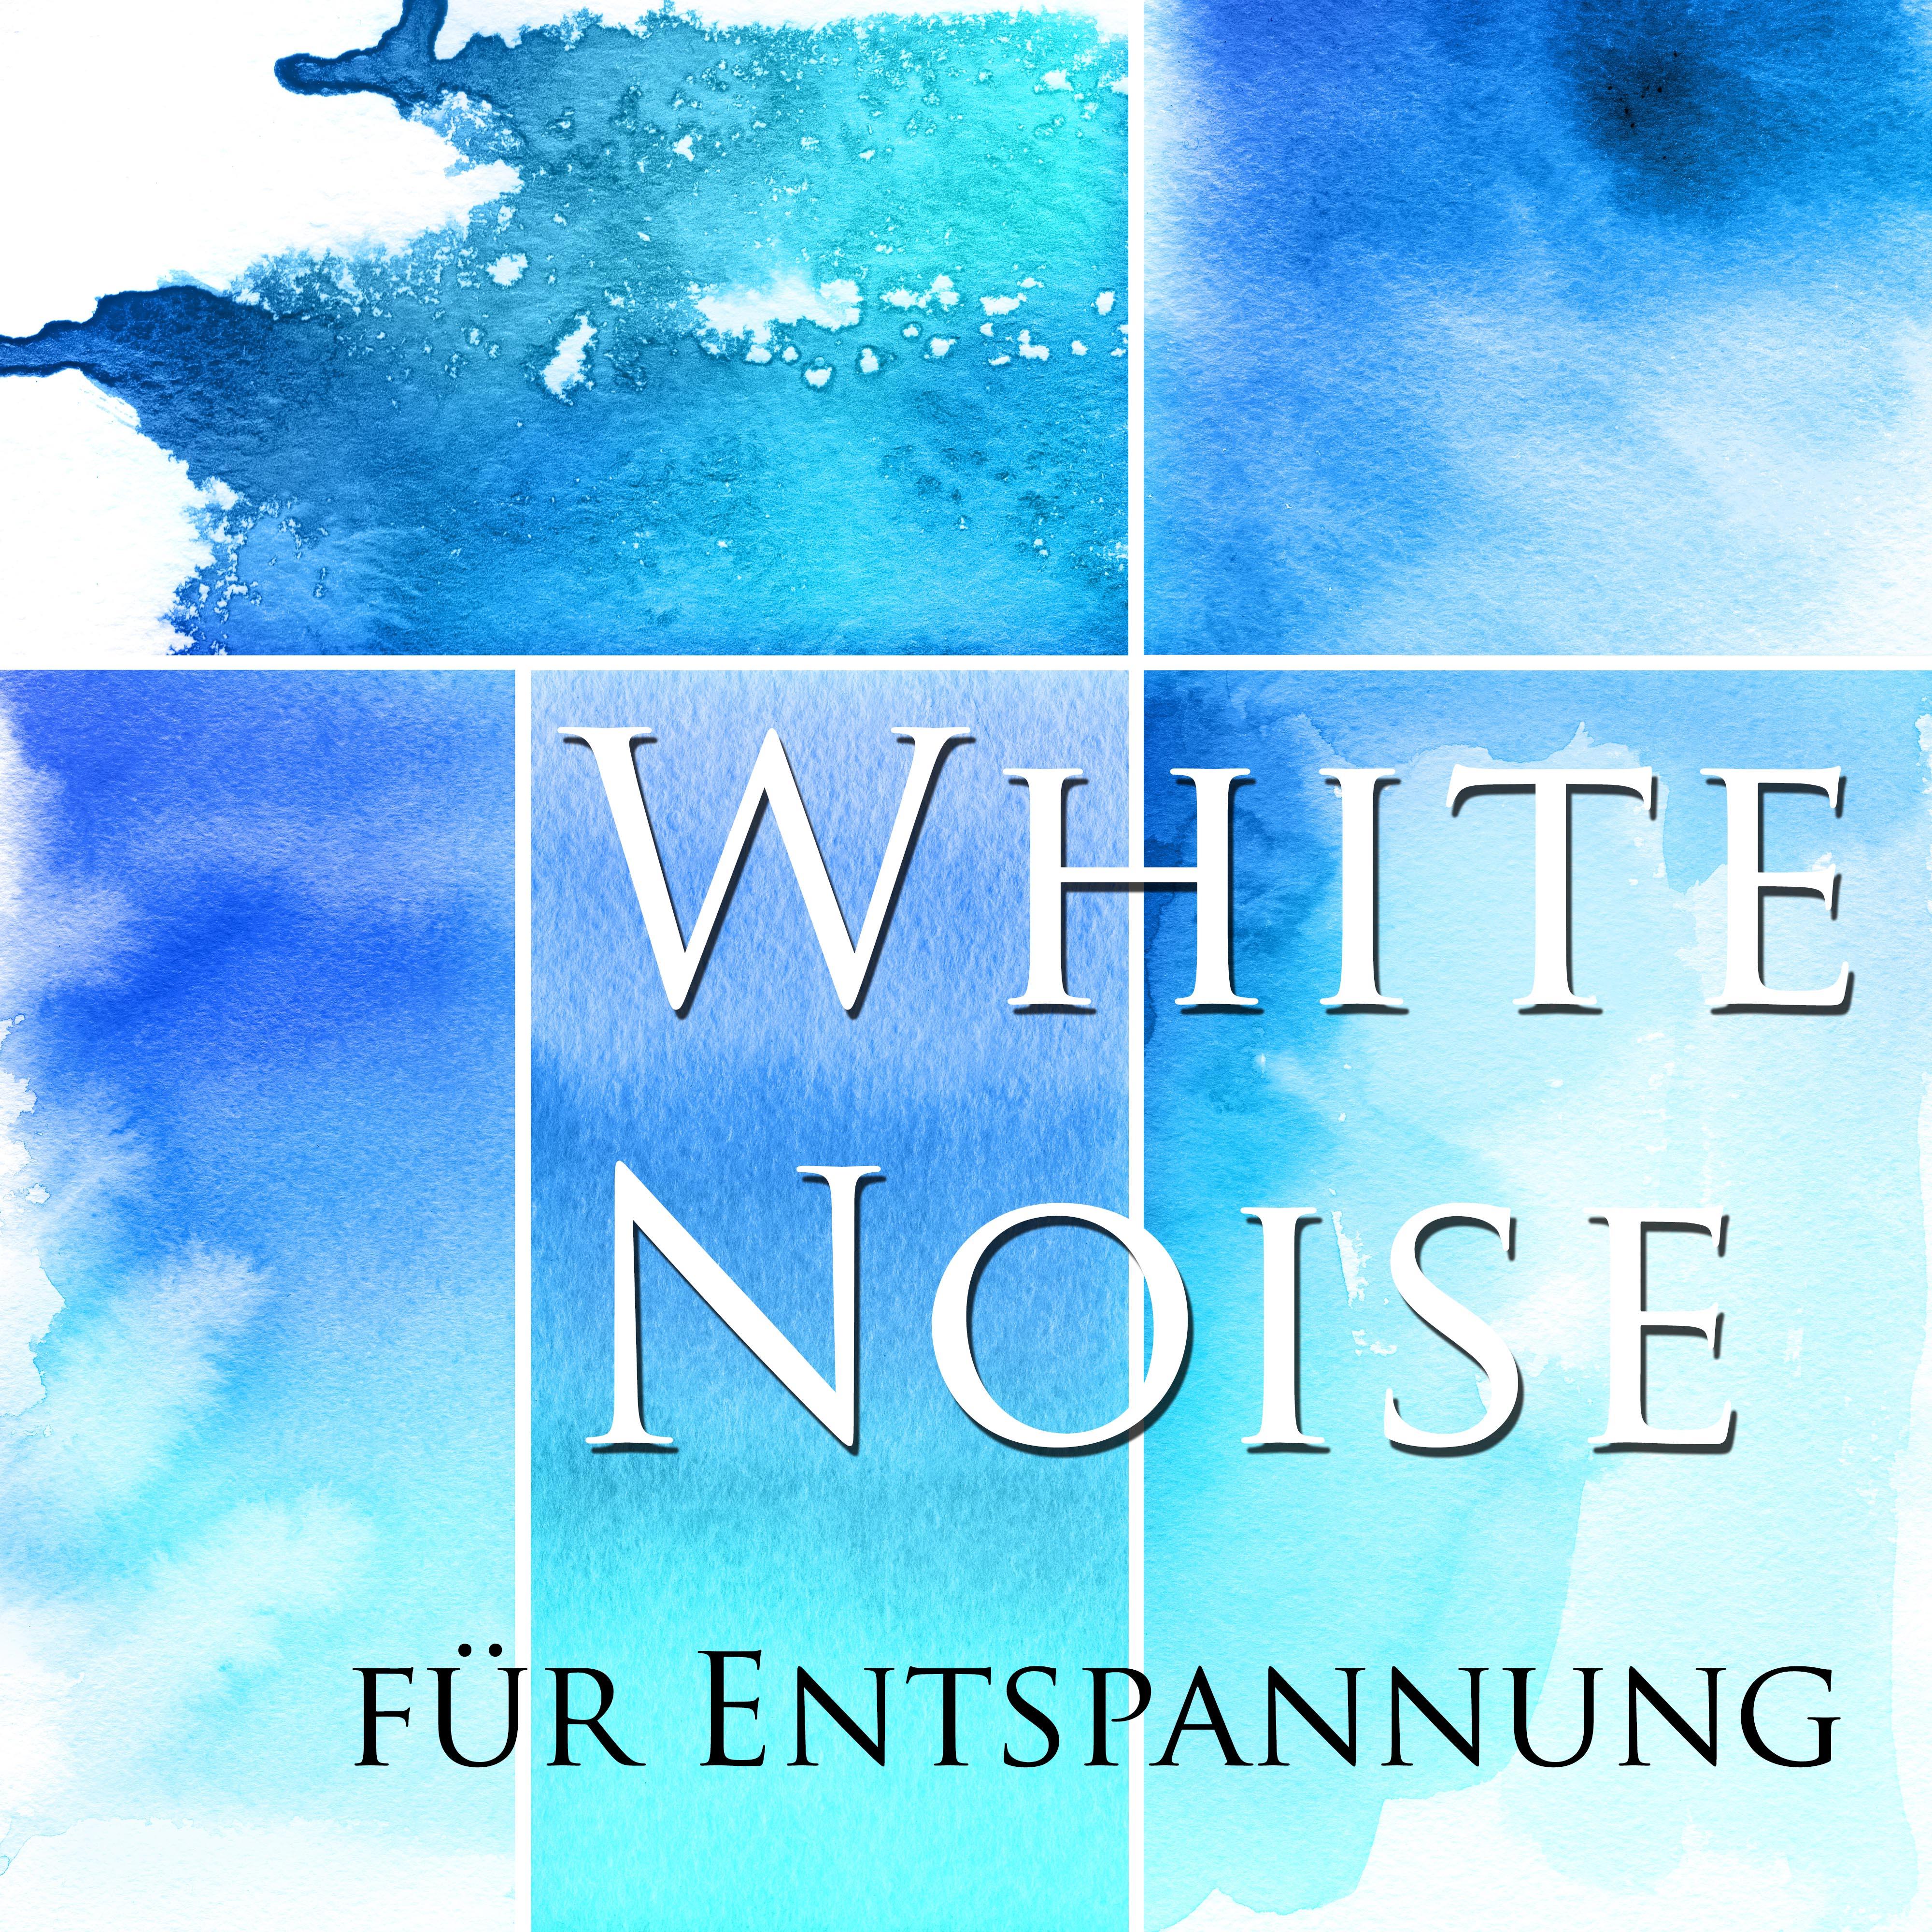 White Noise für Entspannung - Instrumentalmusik und entspannende Klänge der Natur Stress und Spannungen zu lindern